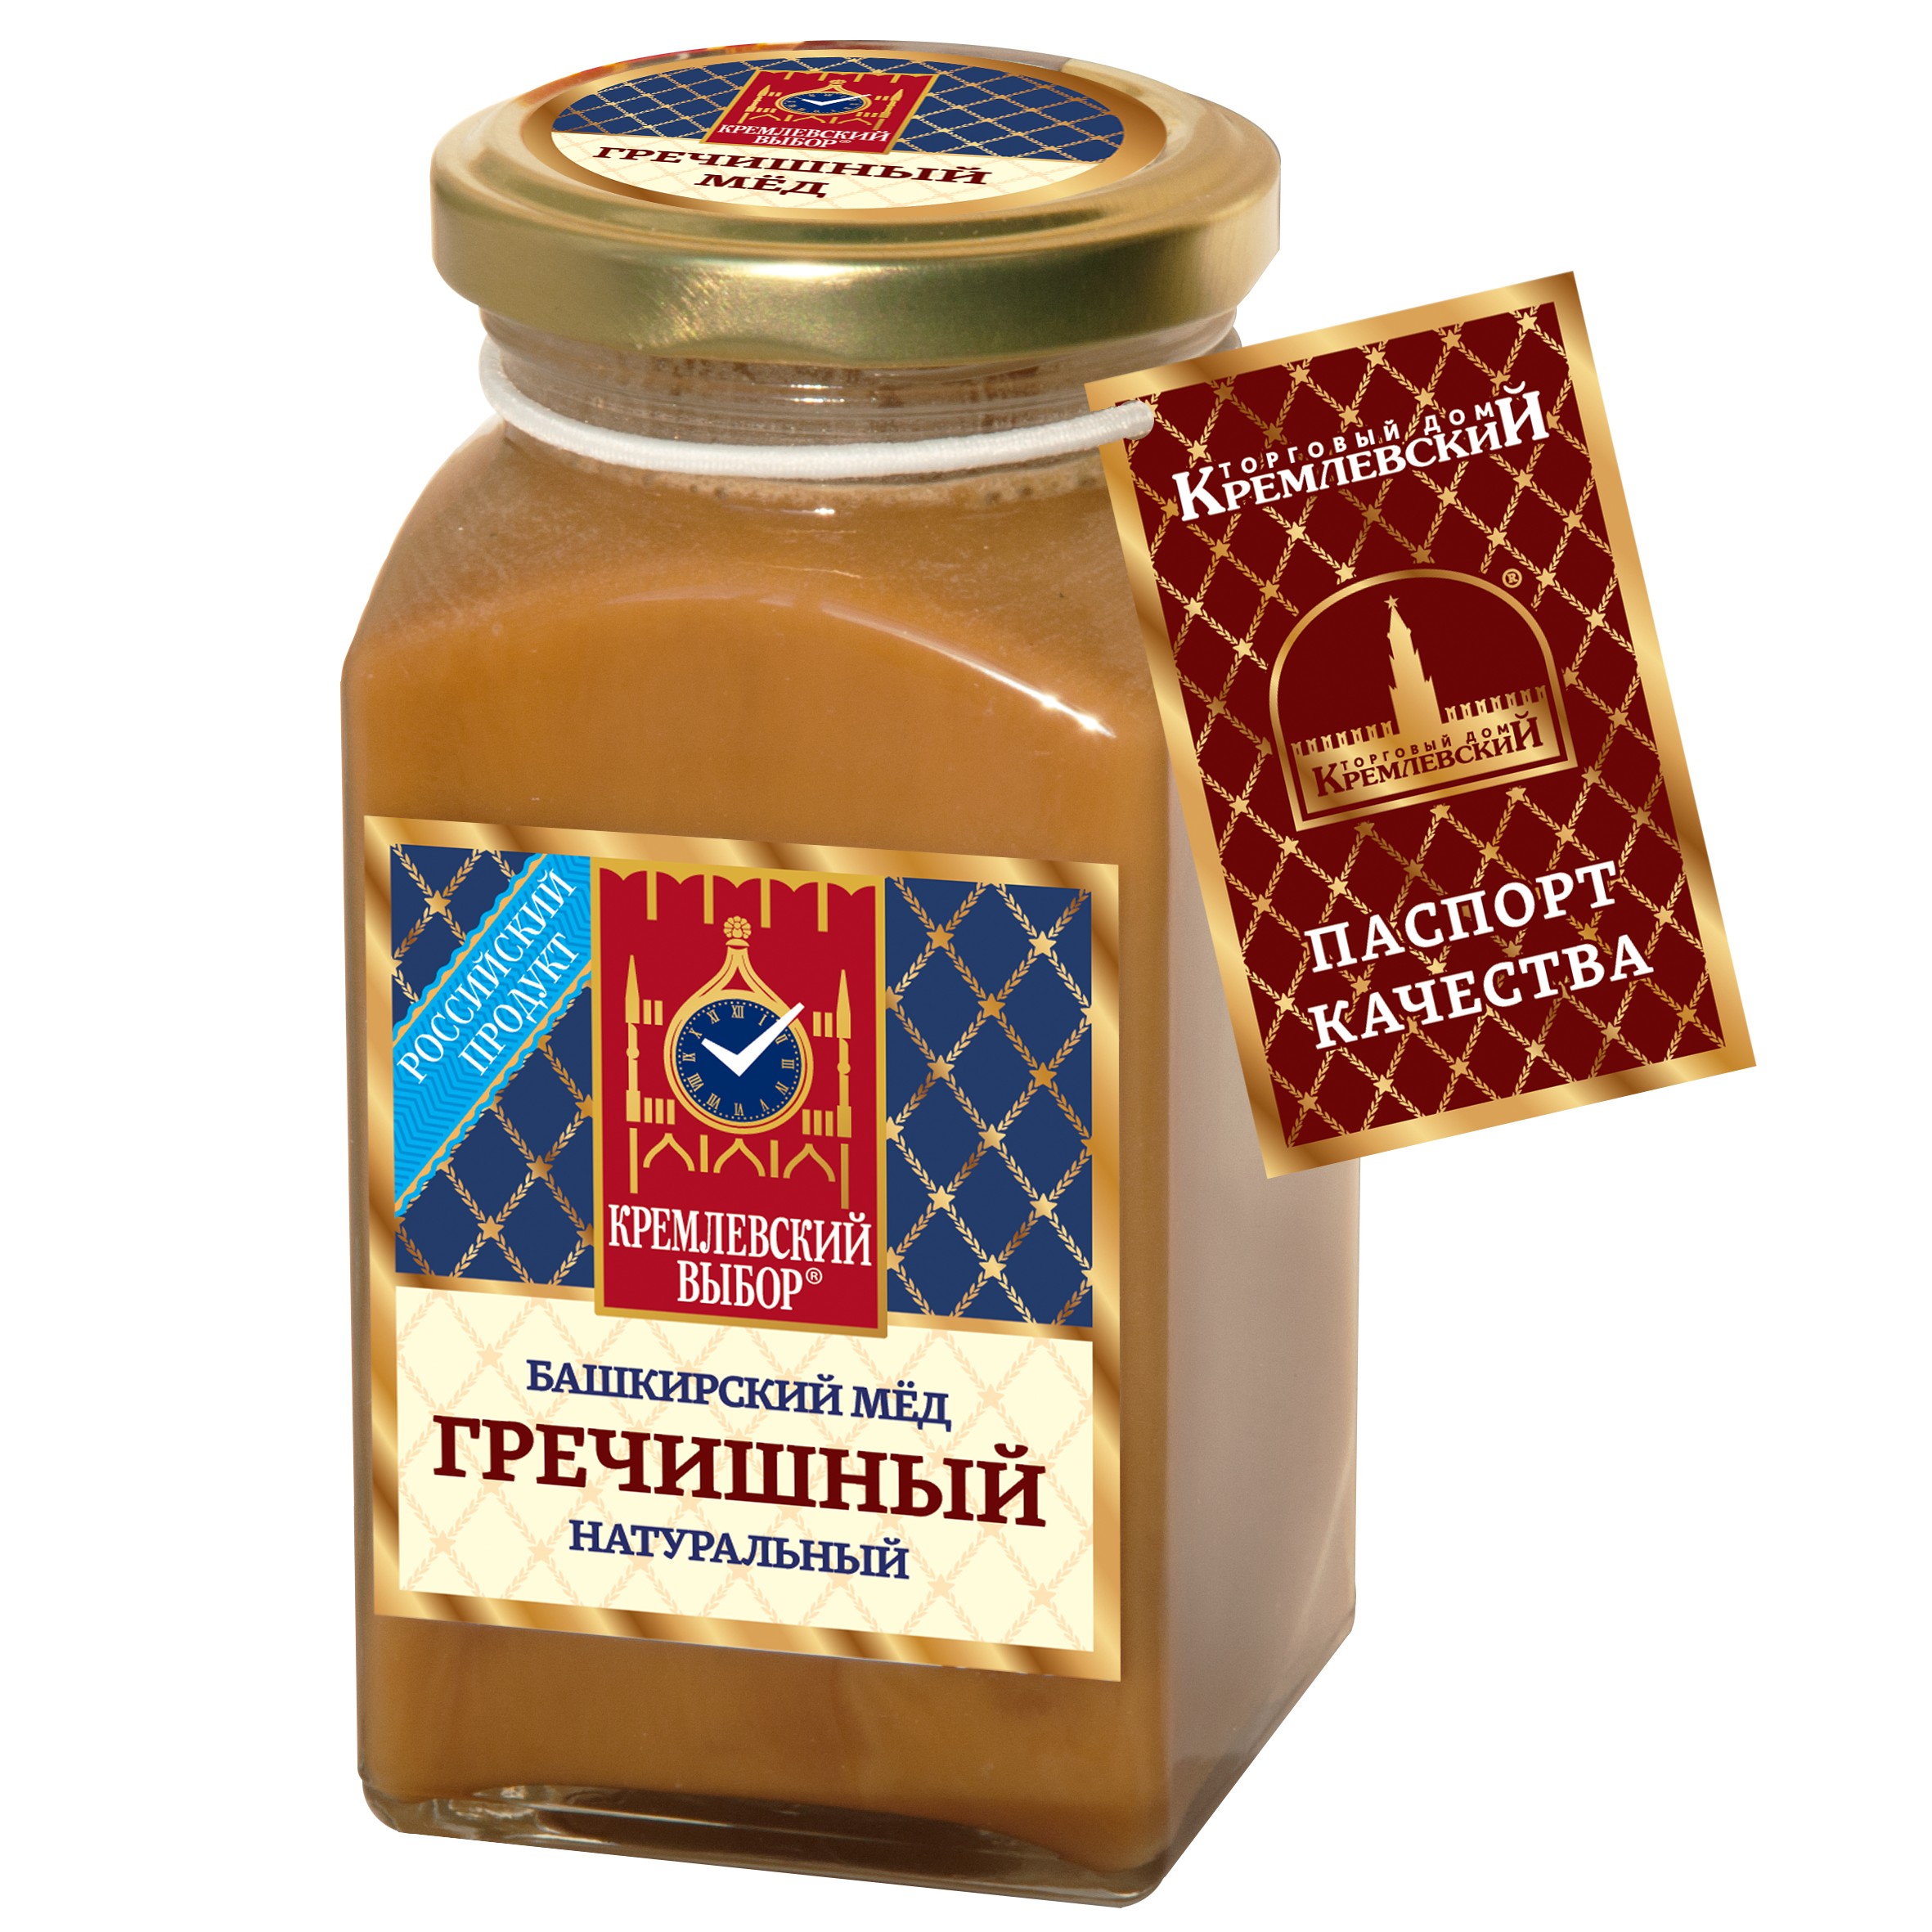 Башкирский мёд гречишный натуральный, 400 г